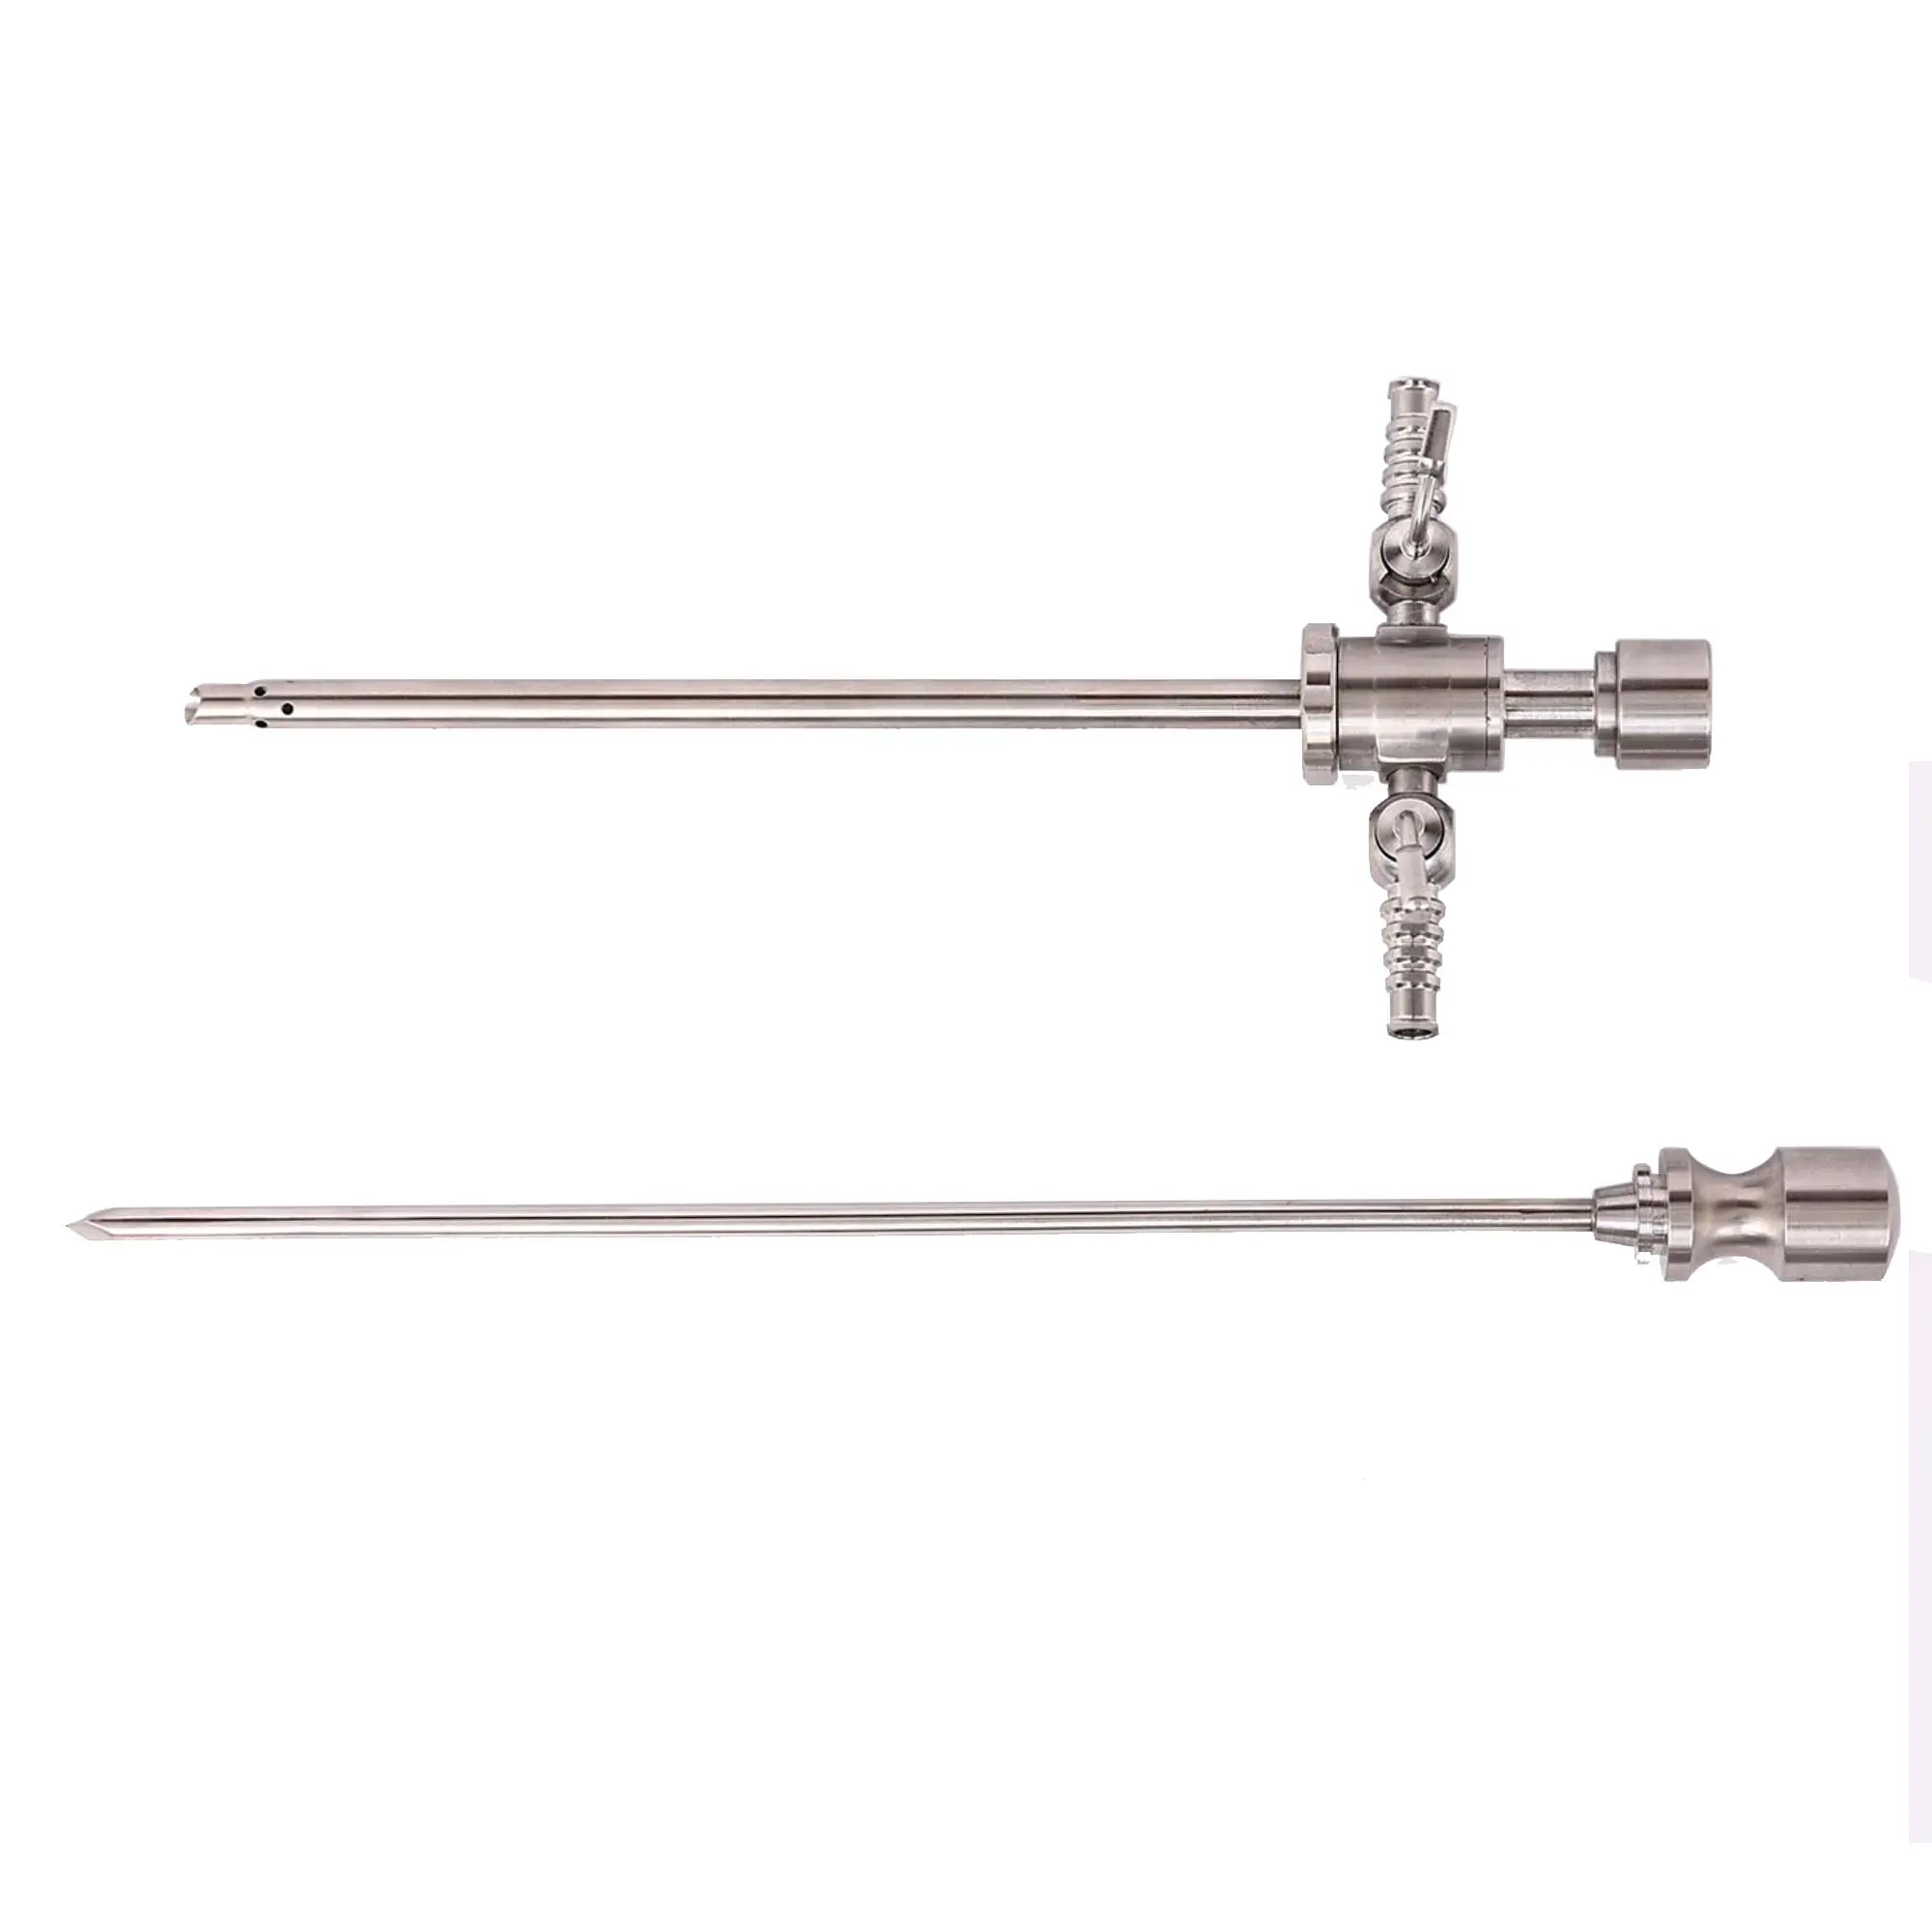 Arthroscope instruments rigid endoscope arthroscopy sheath and trocar compatible with Storz 4mm 0 30degree arthroscope